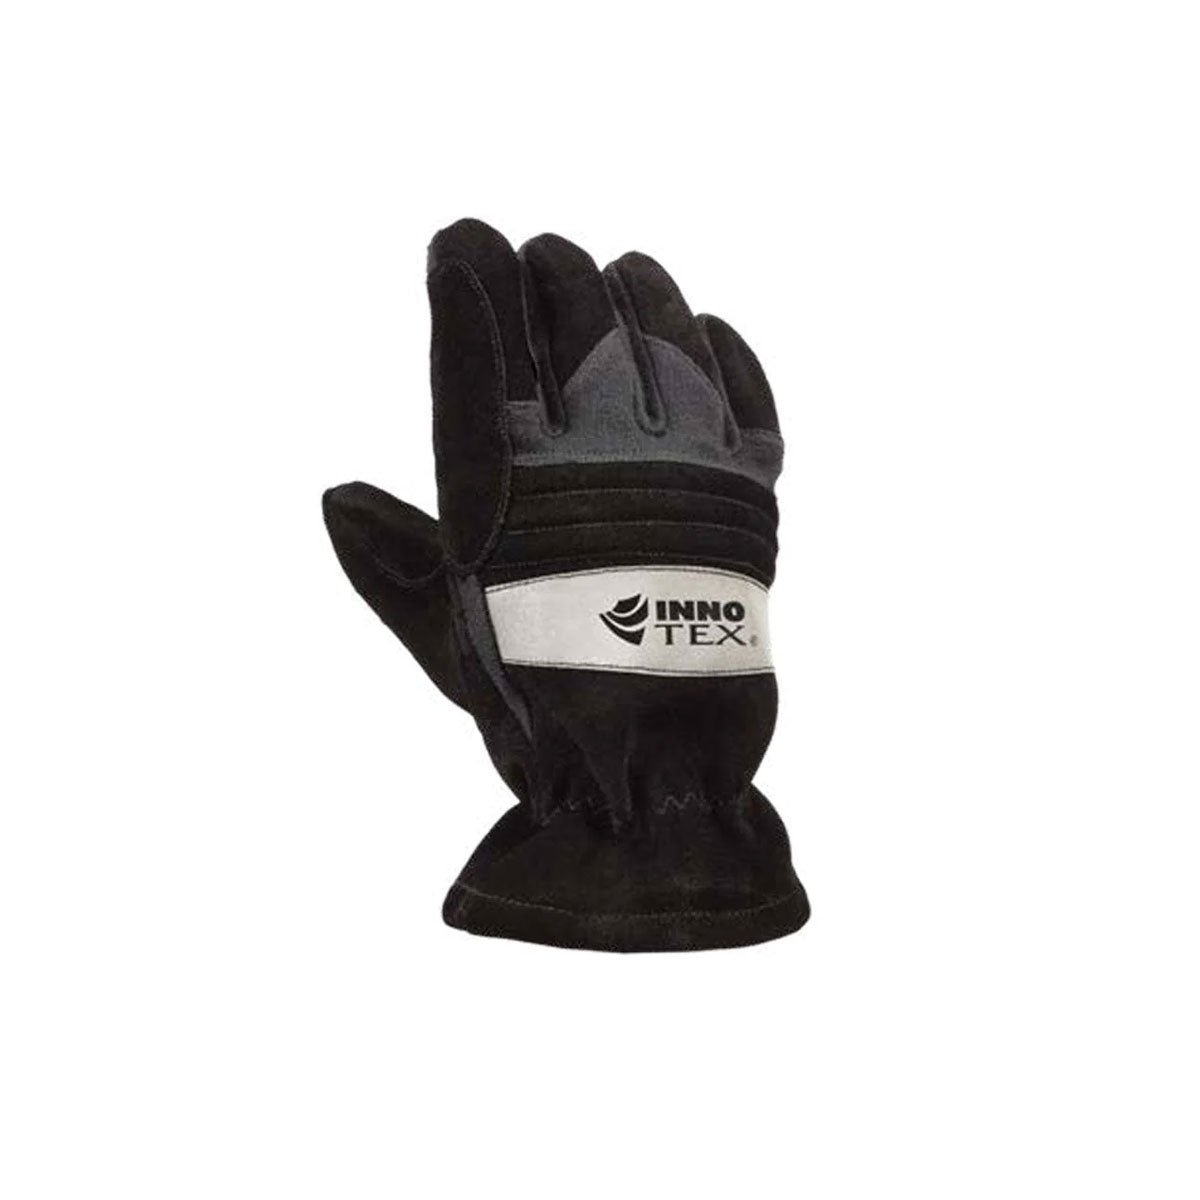 Glove Firefighting Vestamax Black Eversoft Split Cowhide Shell and Kevlar Knit Knuckle Padding Nomex Gauntlet Size Large